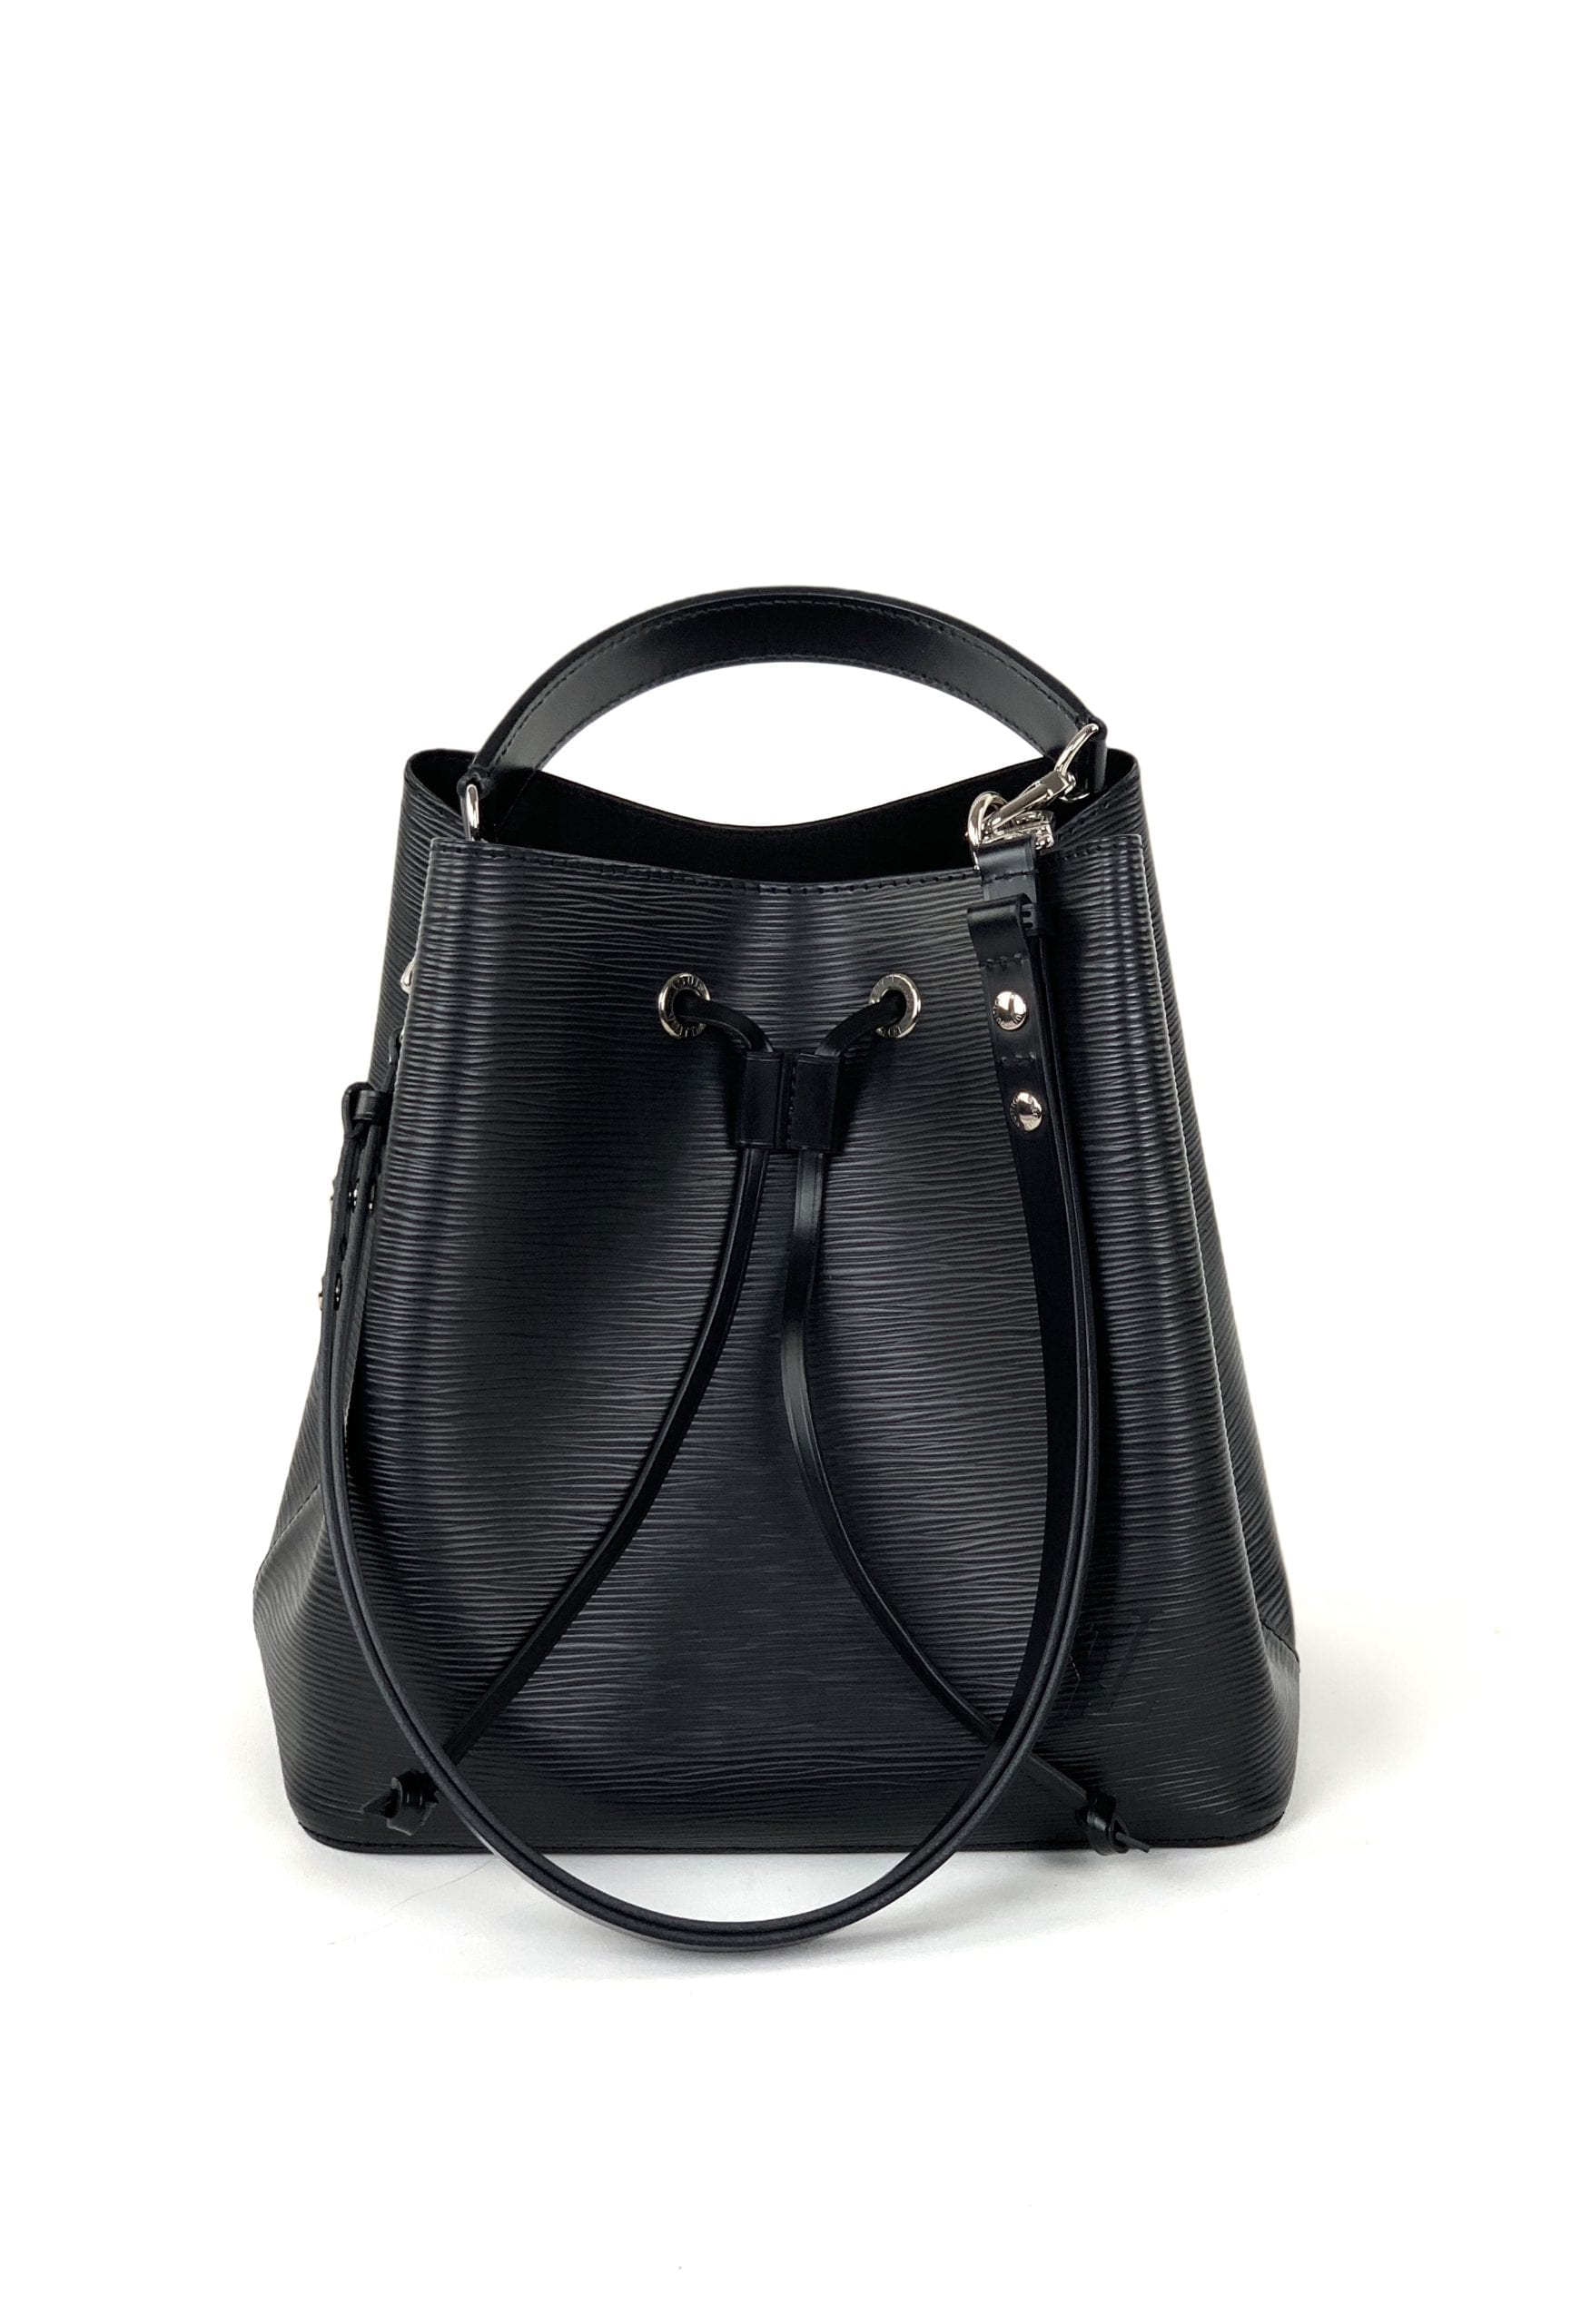 LOUIS VUITTON Neonoe Shoulder Bag M54366 Epi leather Black Noir